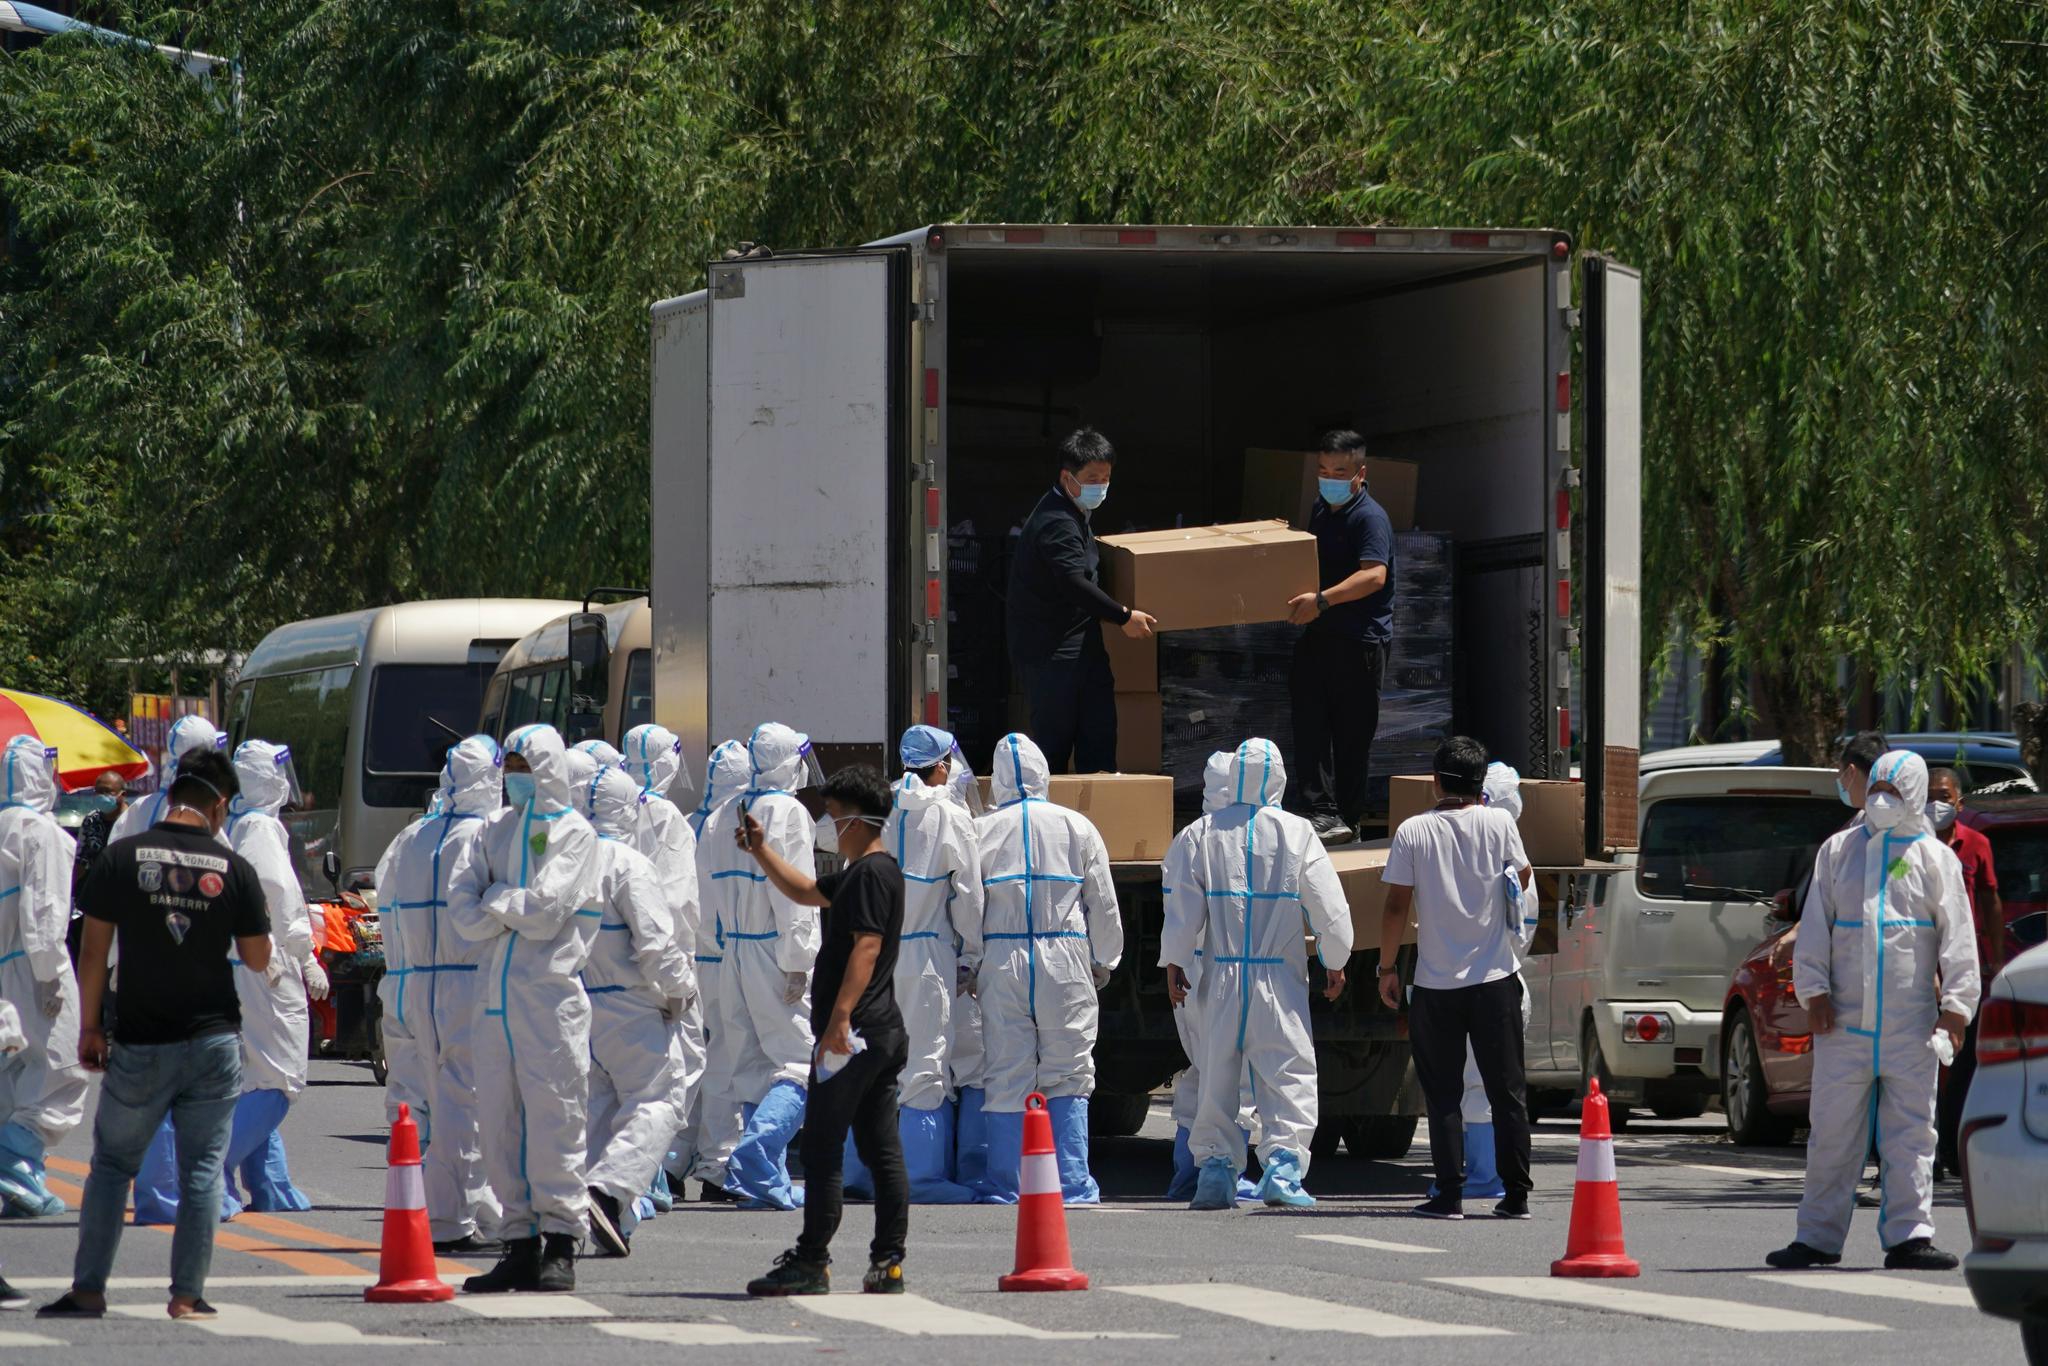 工作人员正从车上搬运物资。本组图片均由新京报记者 裴剑飞 摄